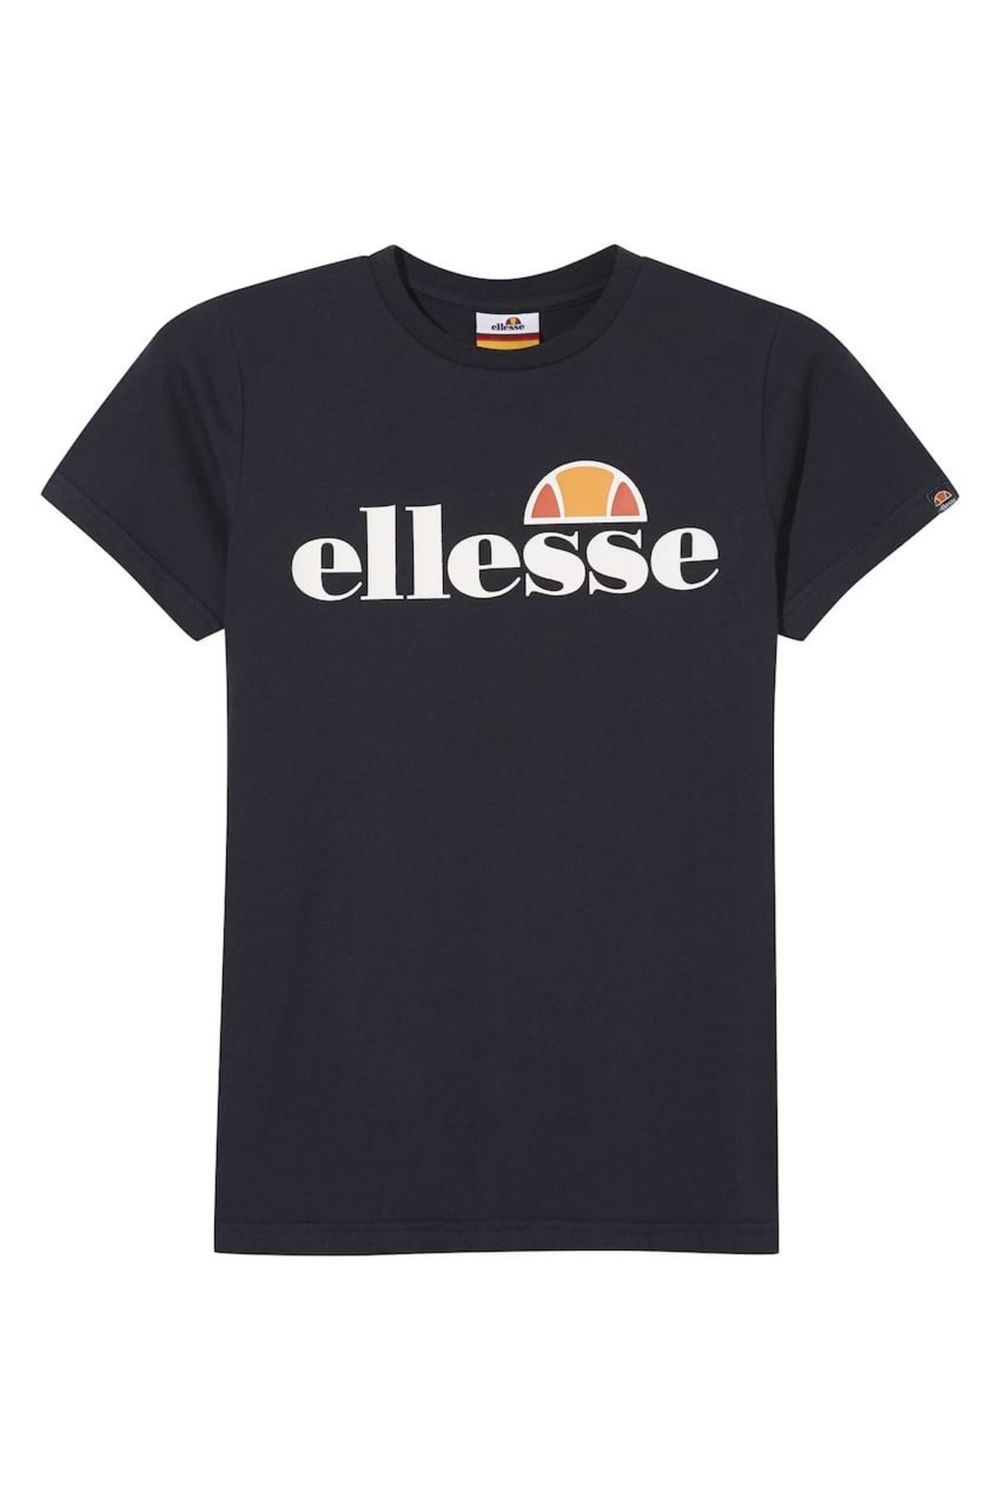 Tee kurzarm, - Ellesse Logo-Print Junior, T-Shirt Trendyol Jungen Rundhals, MALIA -